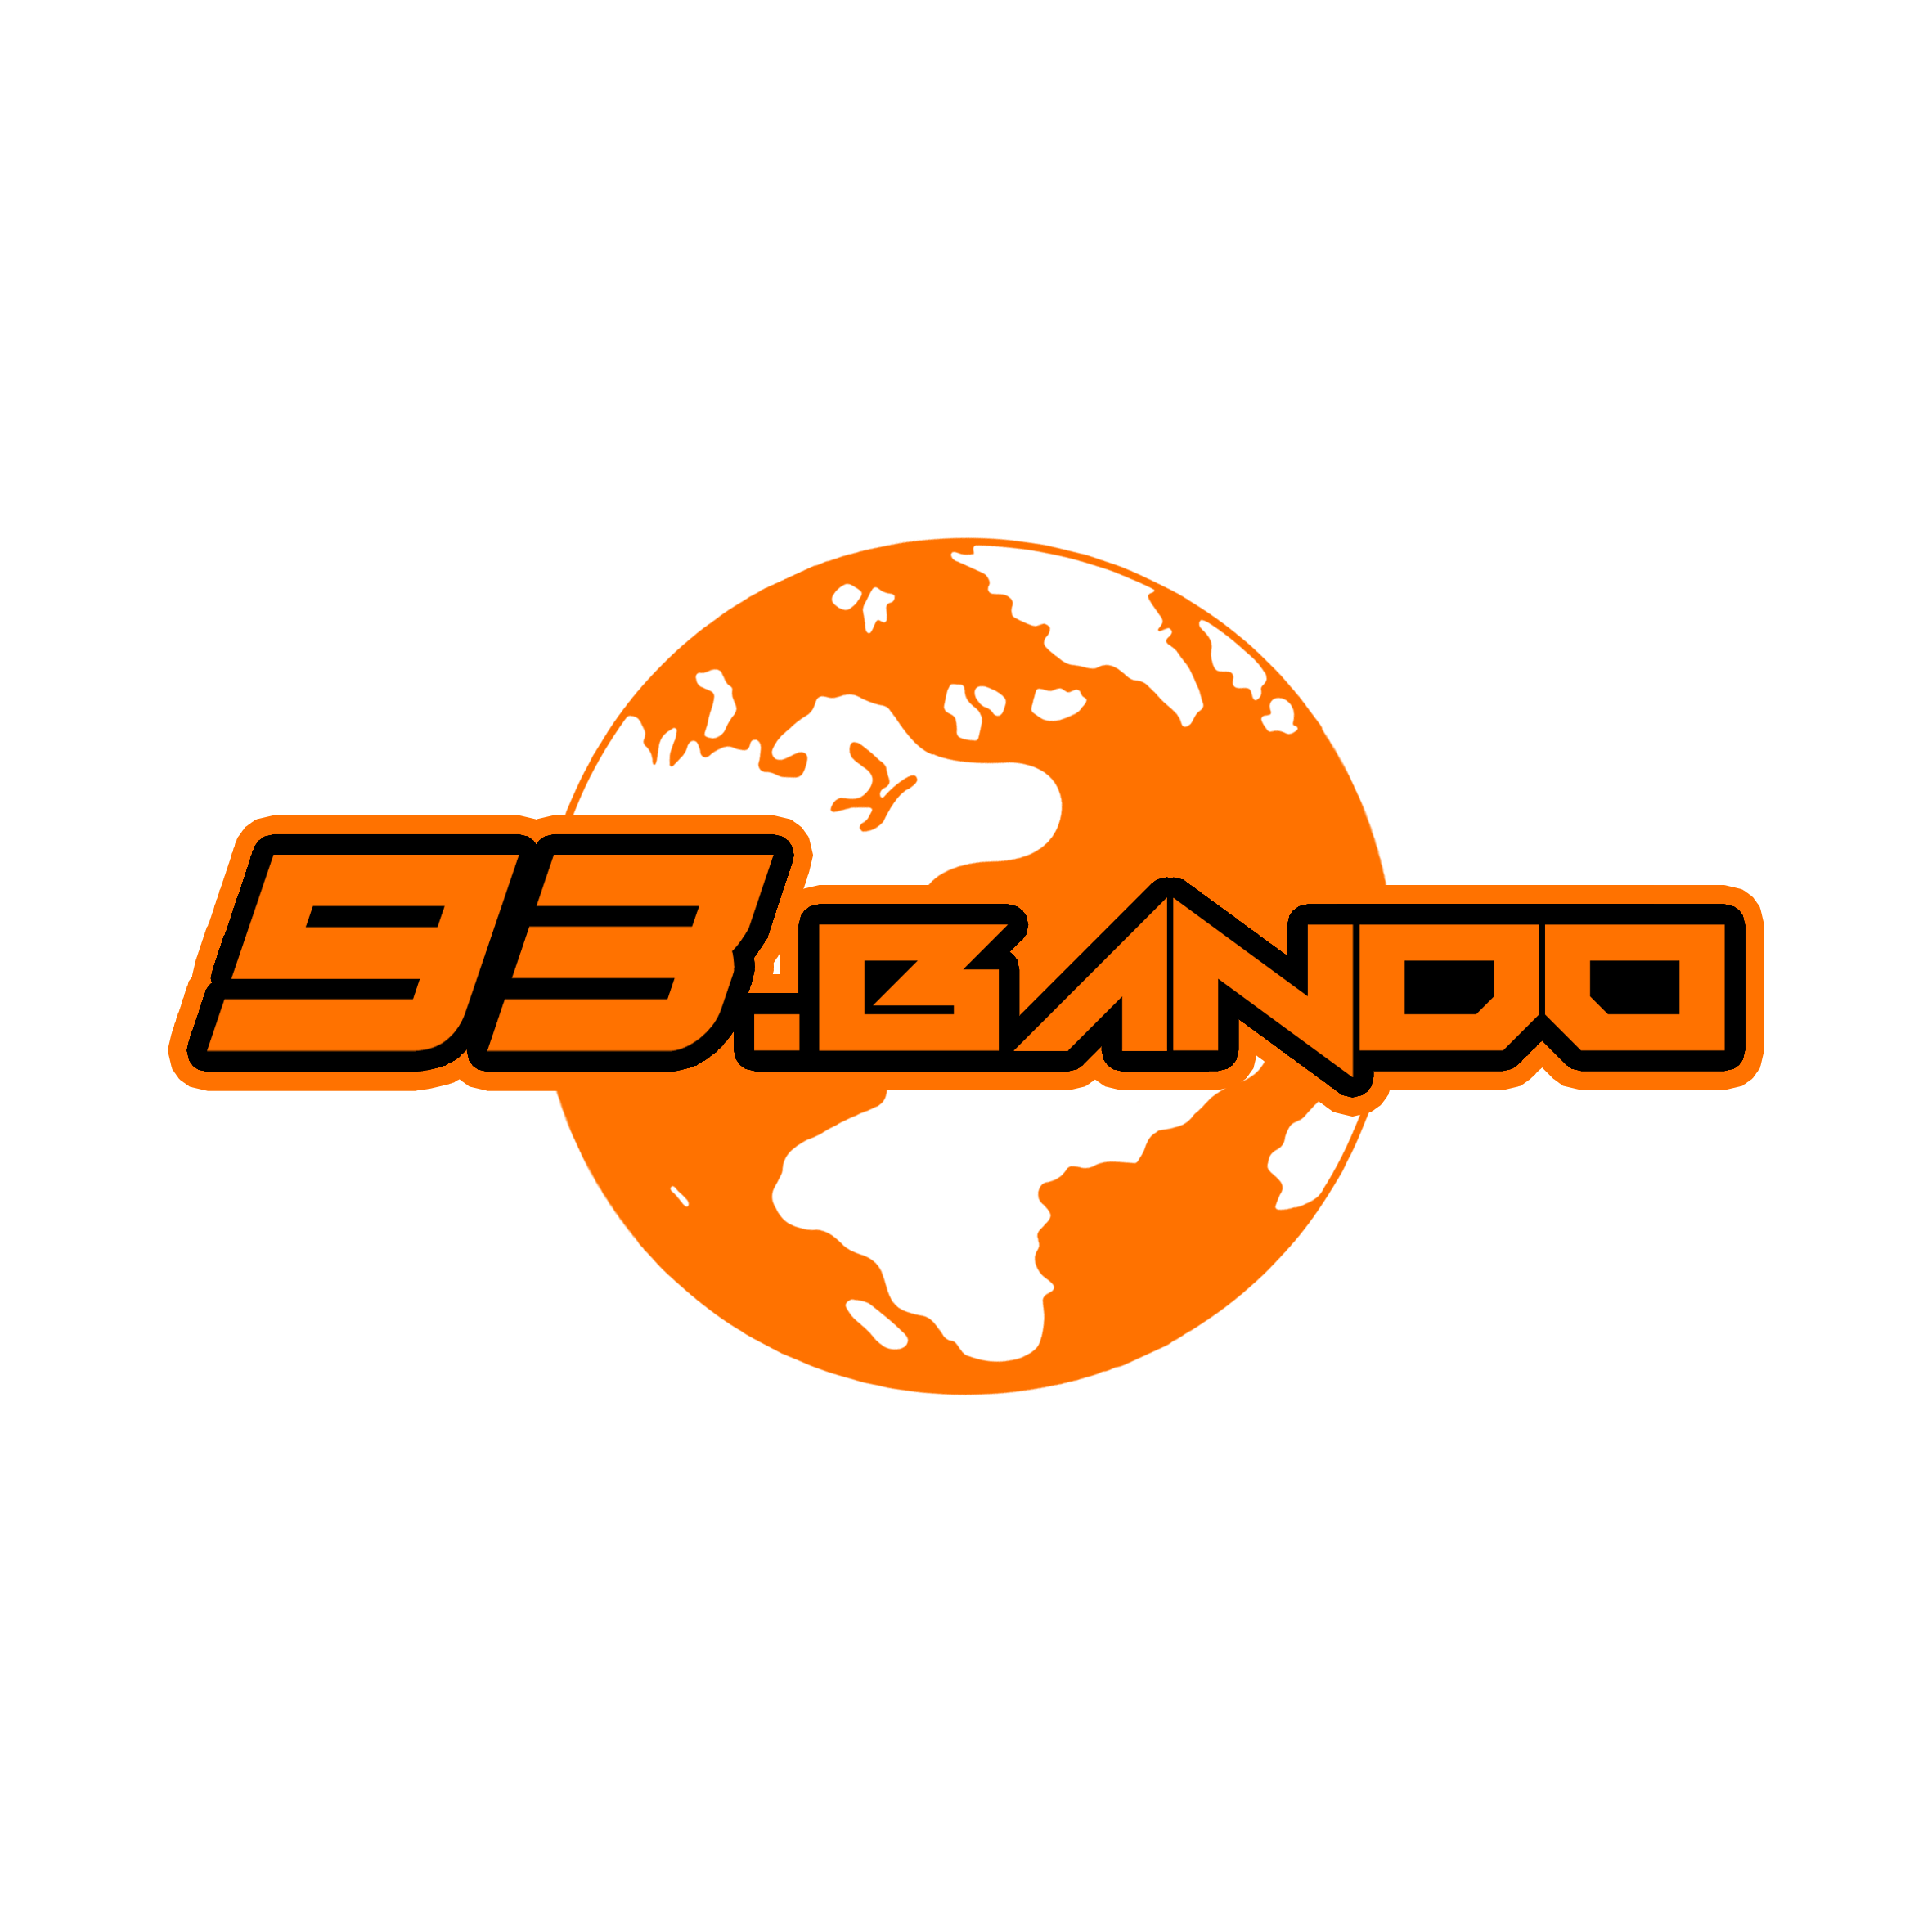 93bando - Go wandering